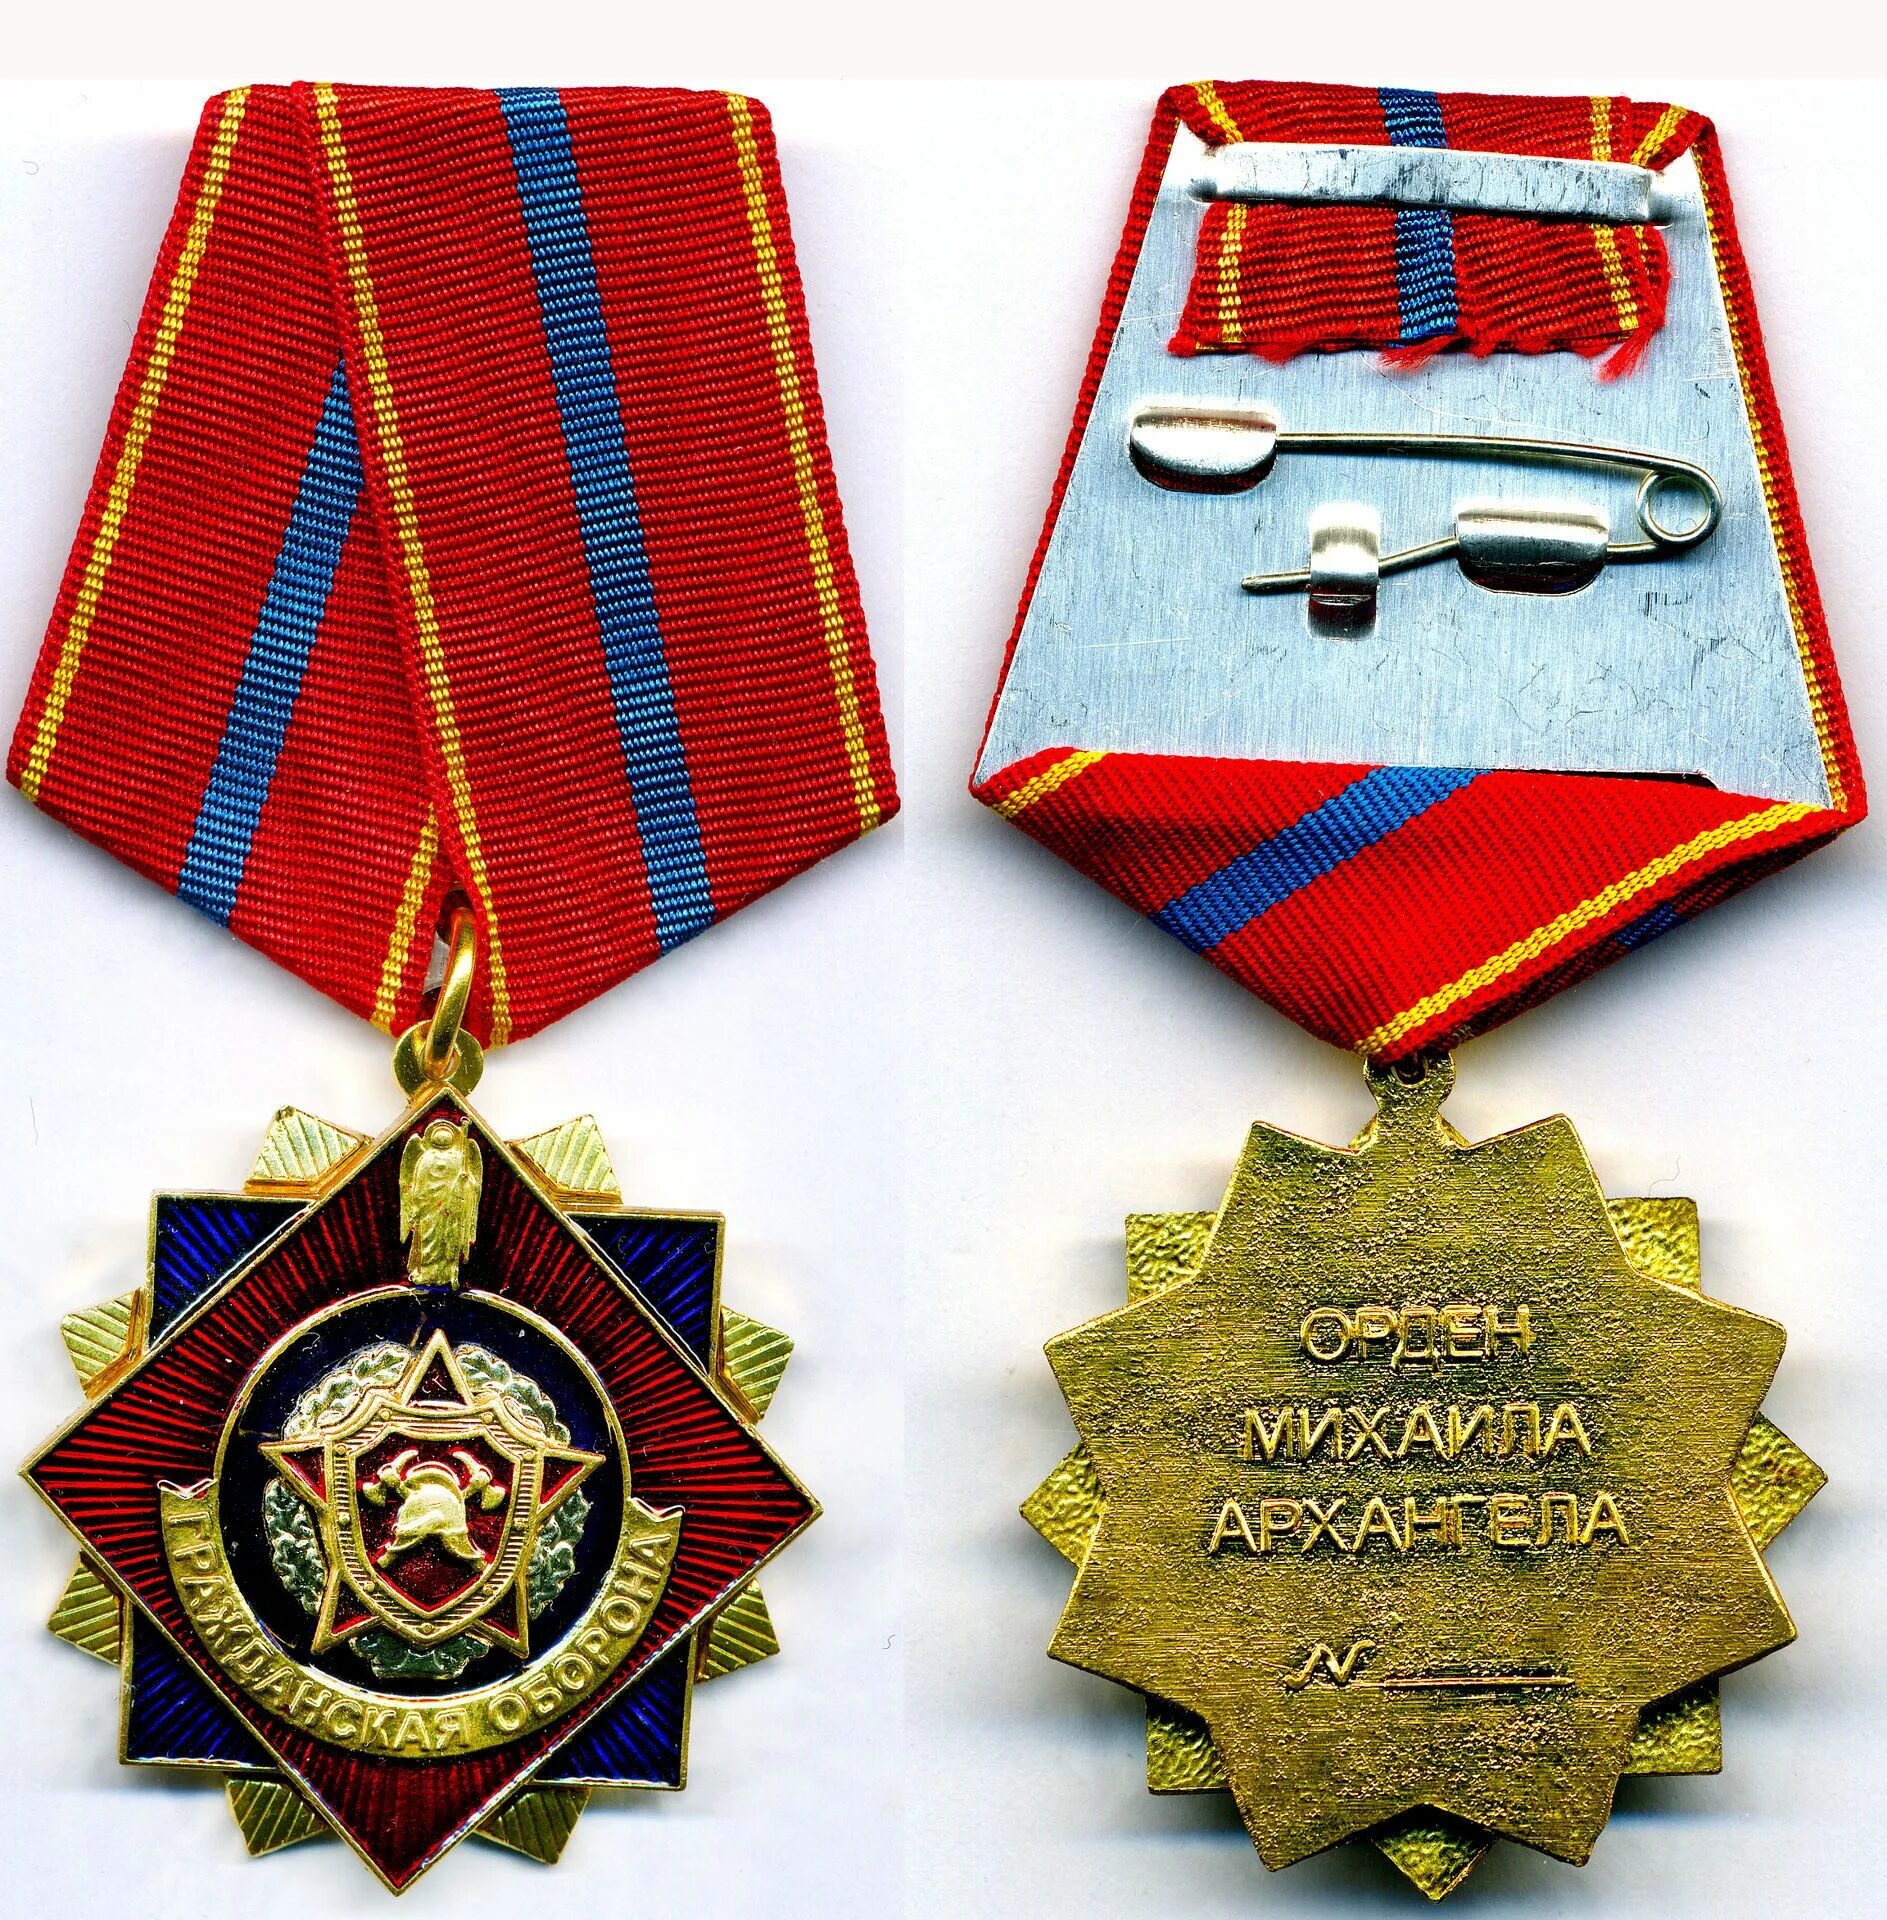 Св го. Орден Святого Михаила Архангела. Медаль Гражданская оборона. Орден гражданской обороны.